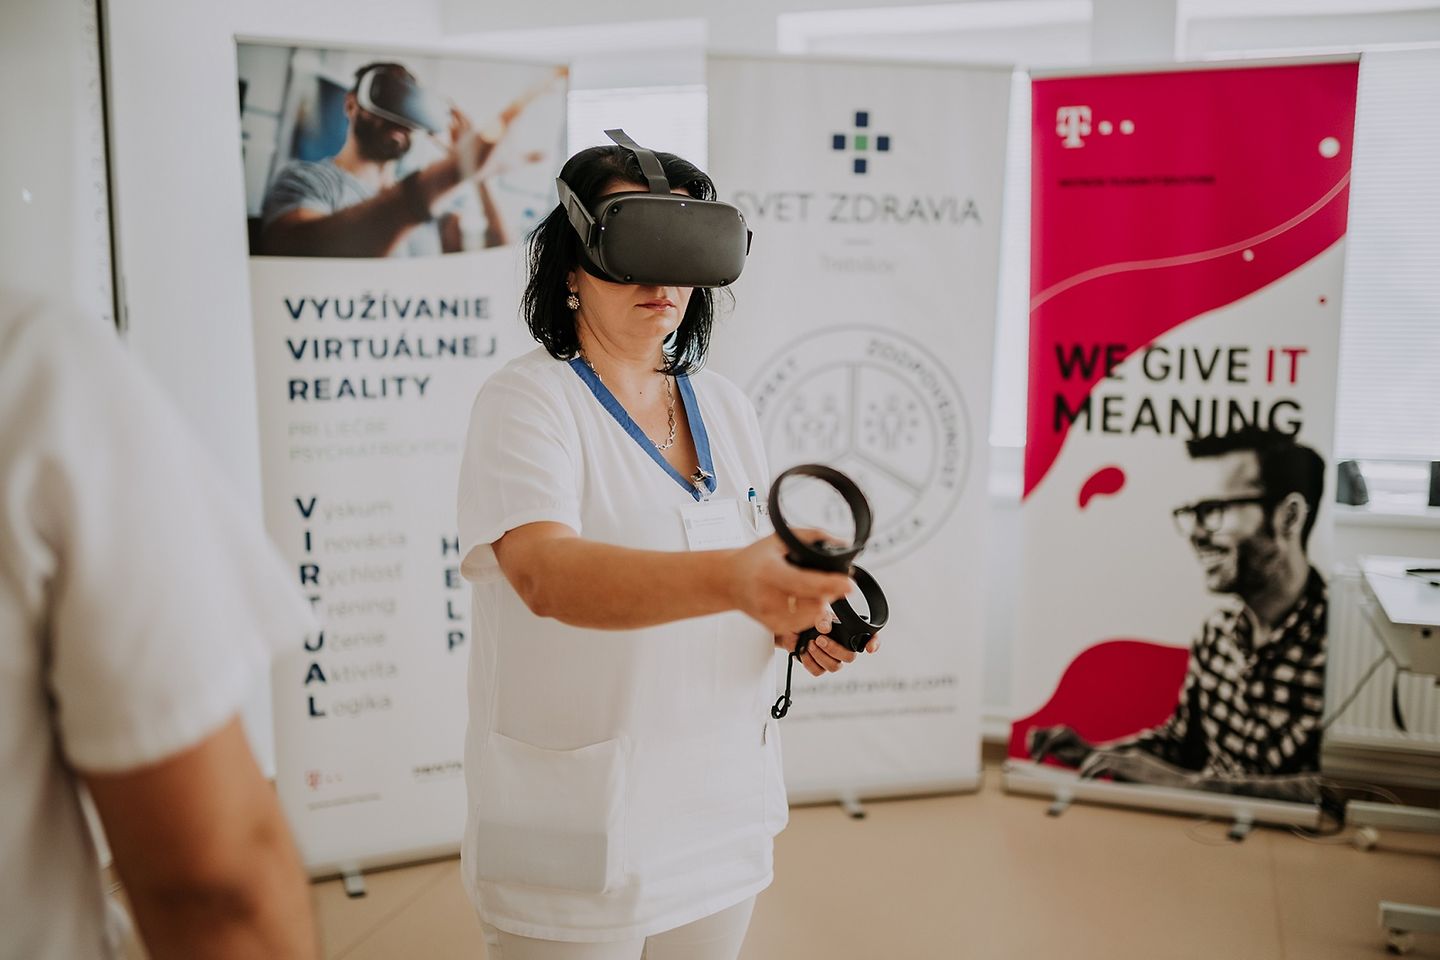 Arzthelferin mit einer VR-Brille